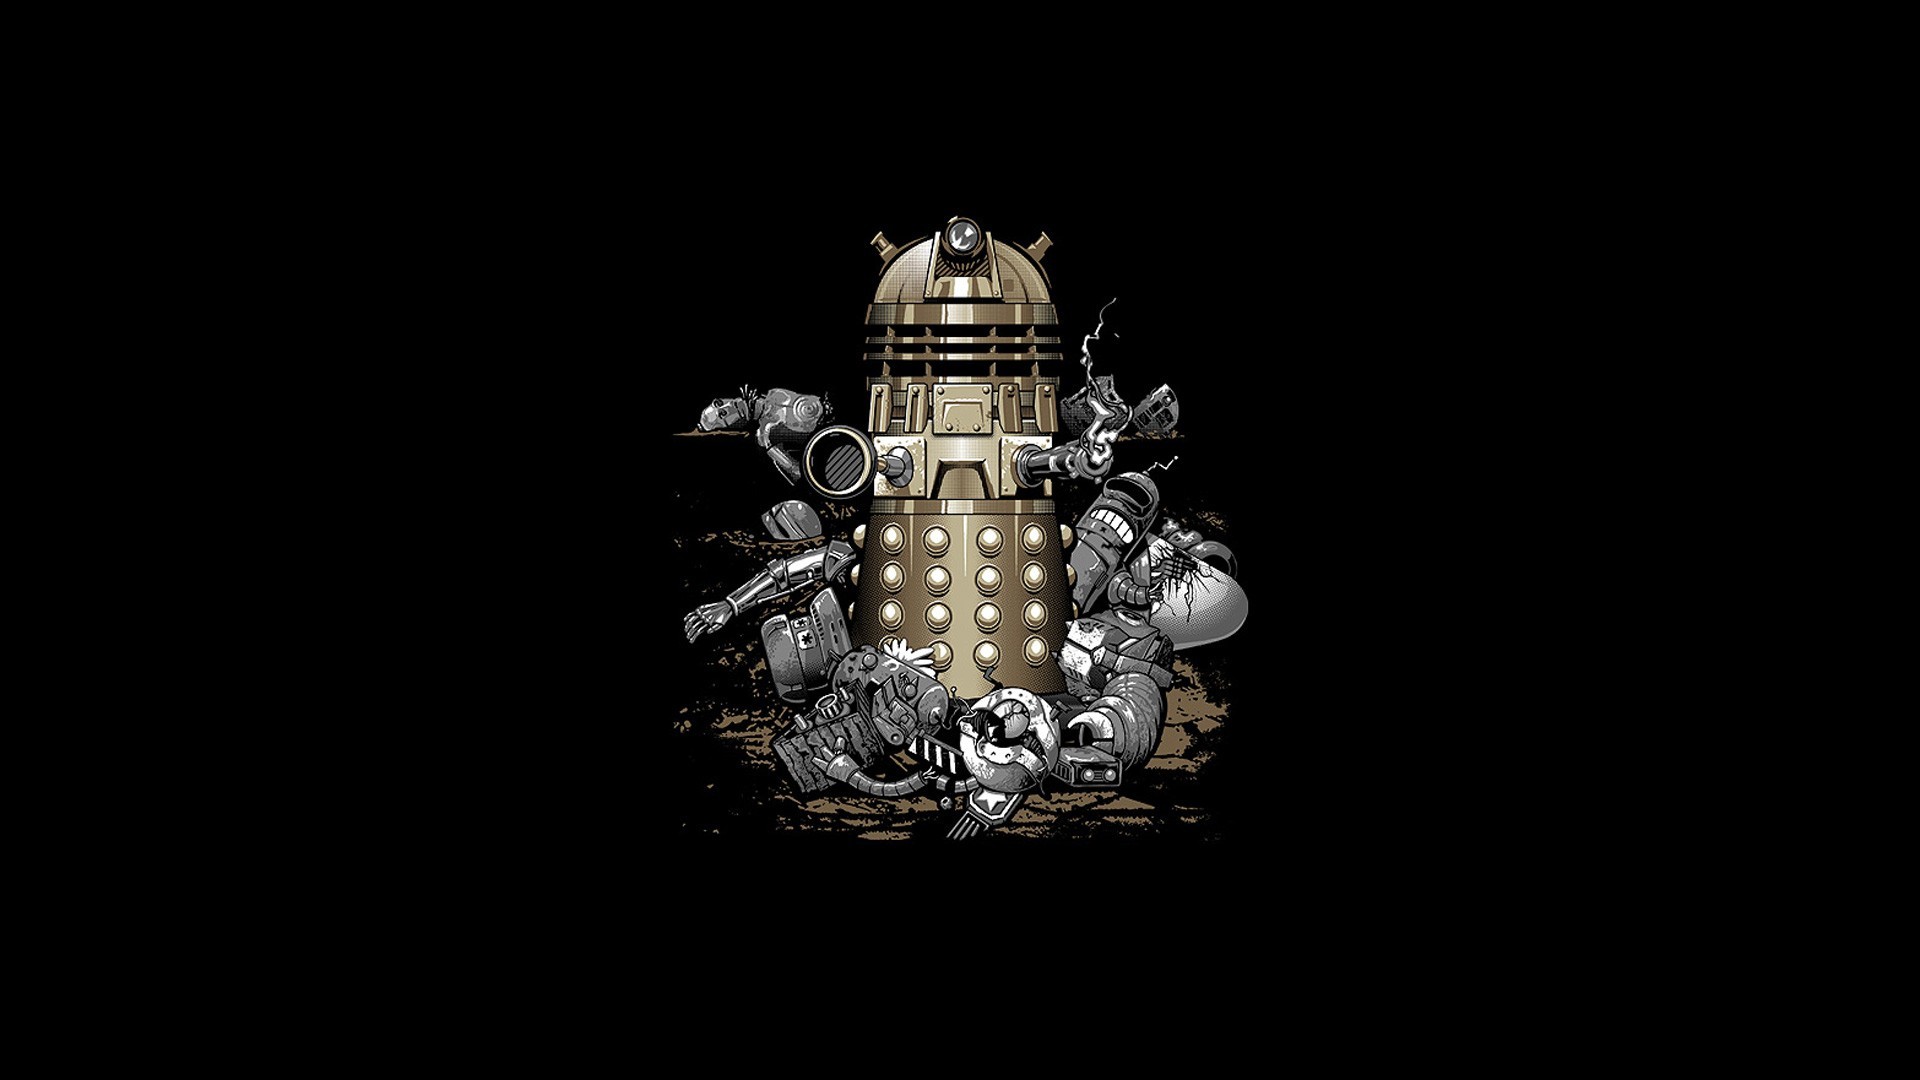 Doctor Who Daleks Daleks Doctor Who Dark Humor 1920x1080